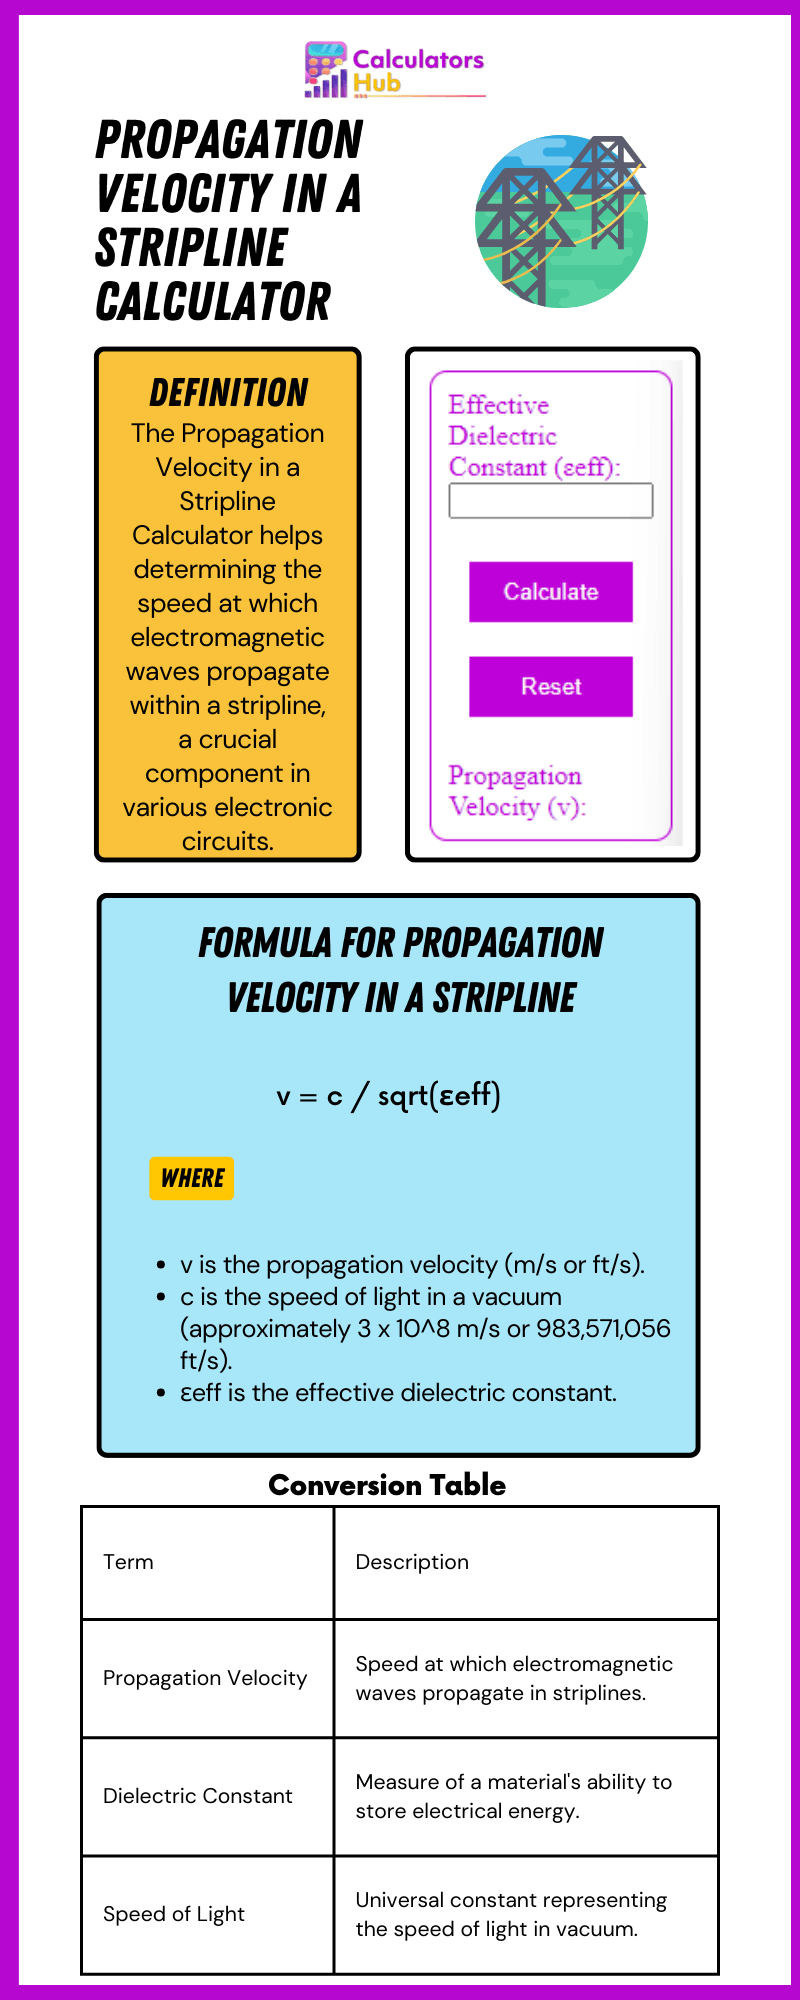 Propagation Velocity in a Stripline Calculator